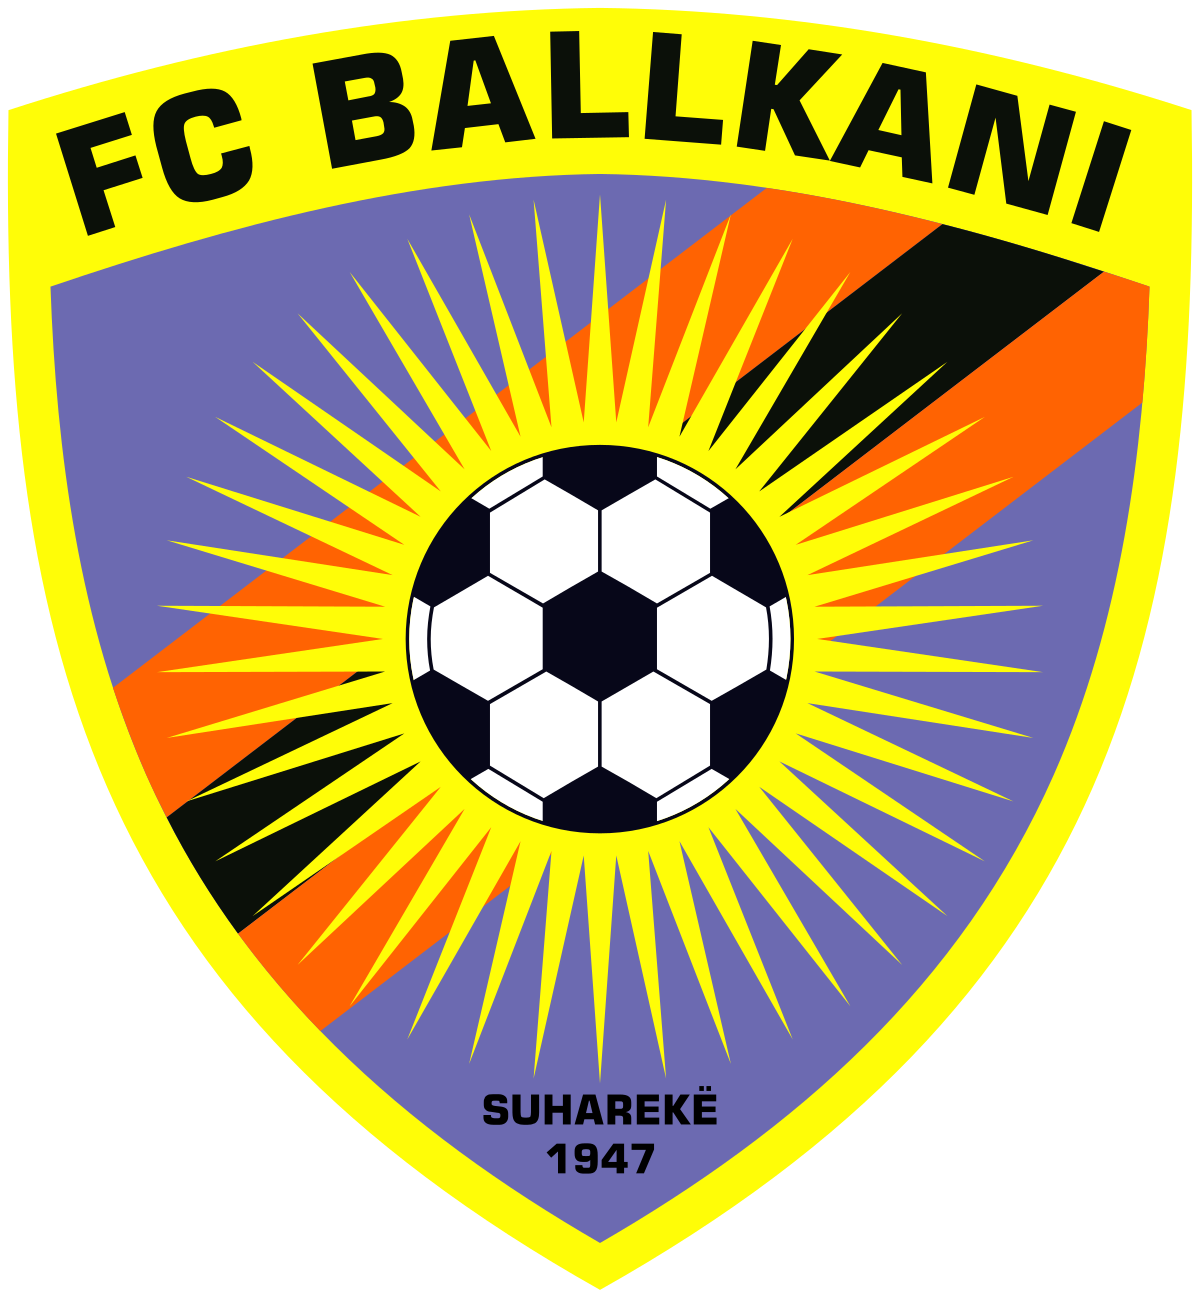 巴尔干尼 logo